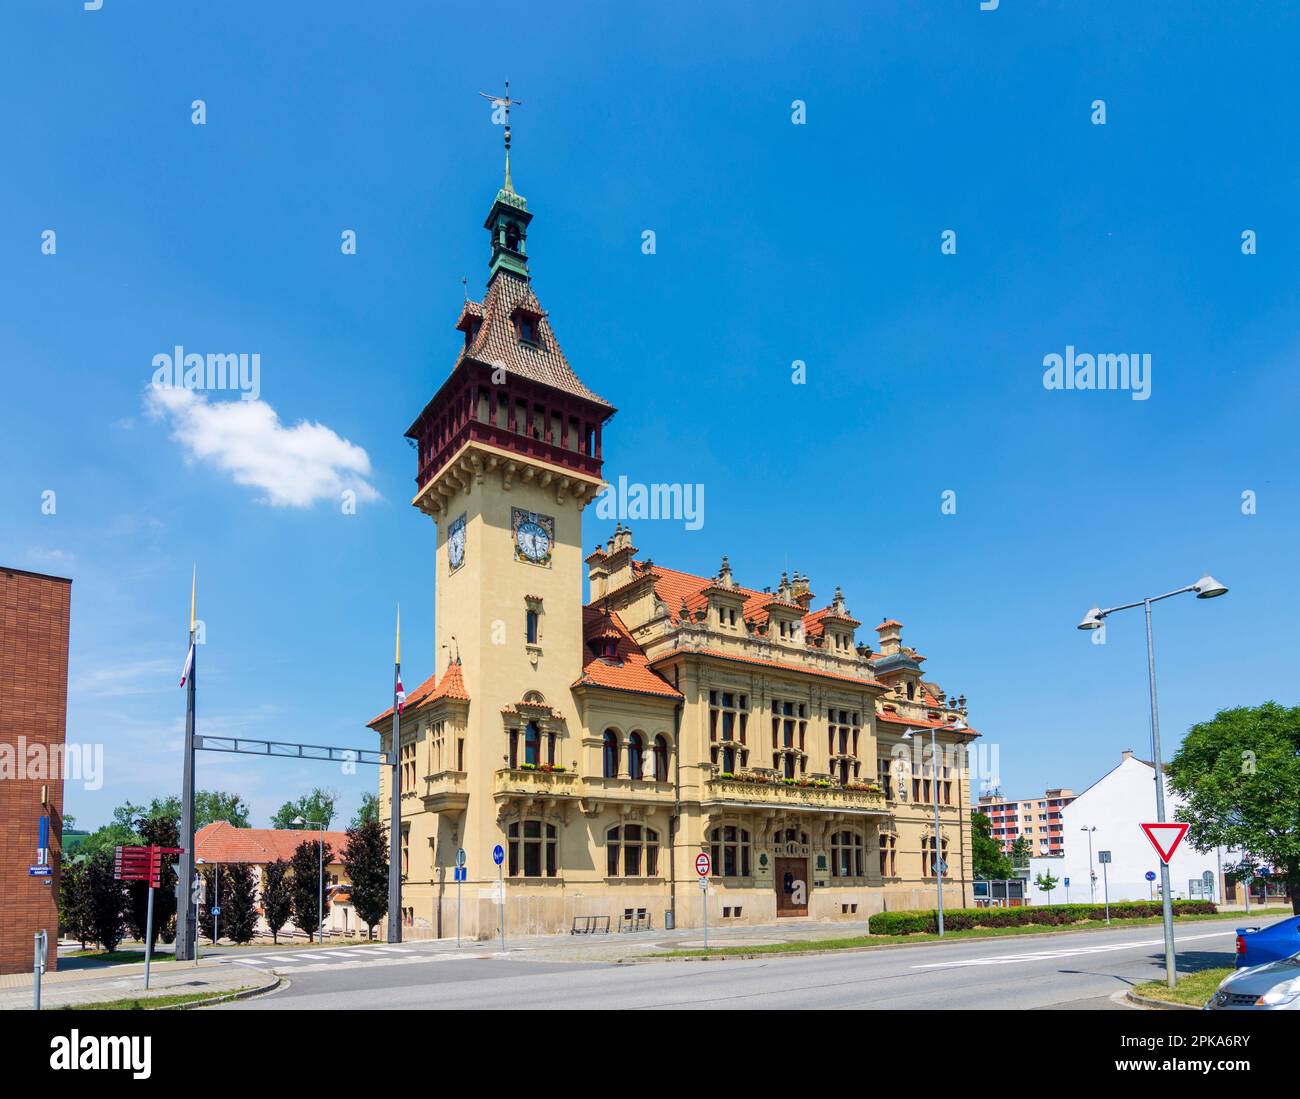 Napajedla (Napajedl), Town Hall in Zlinsky, Zlin Region (Zliner Region), Czechia Stock Photo